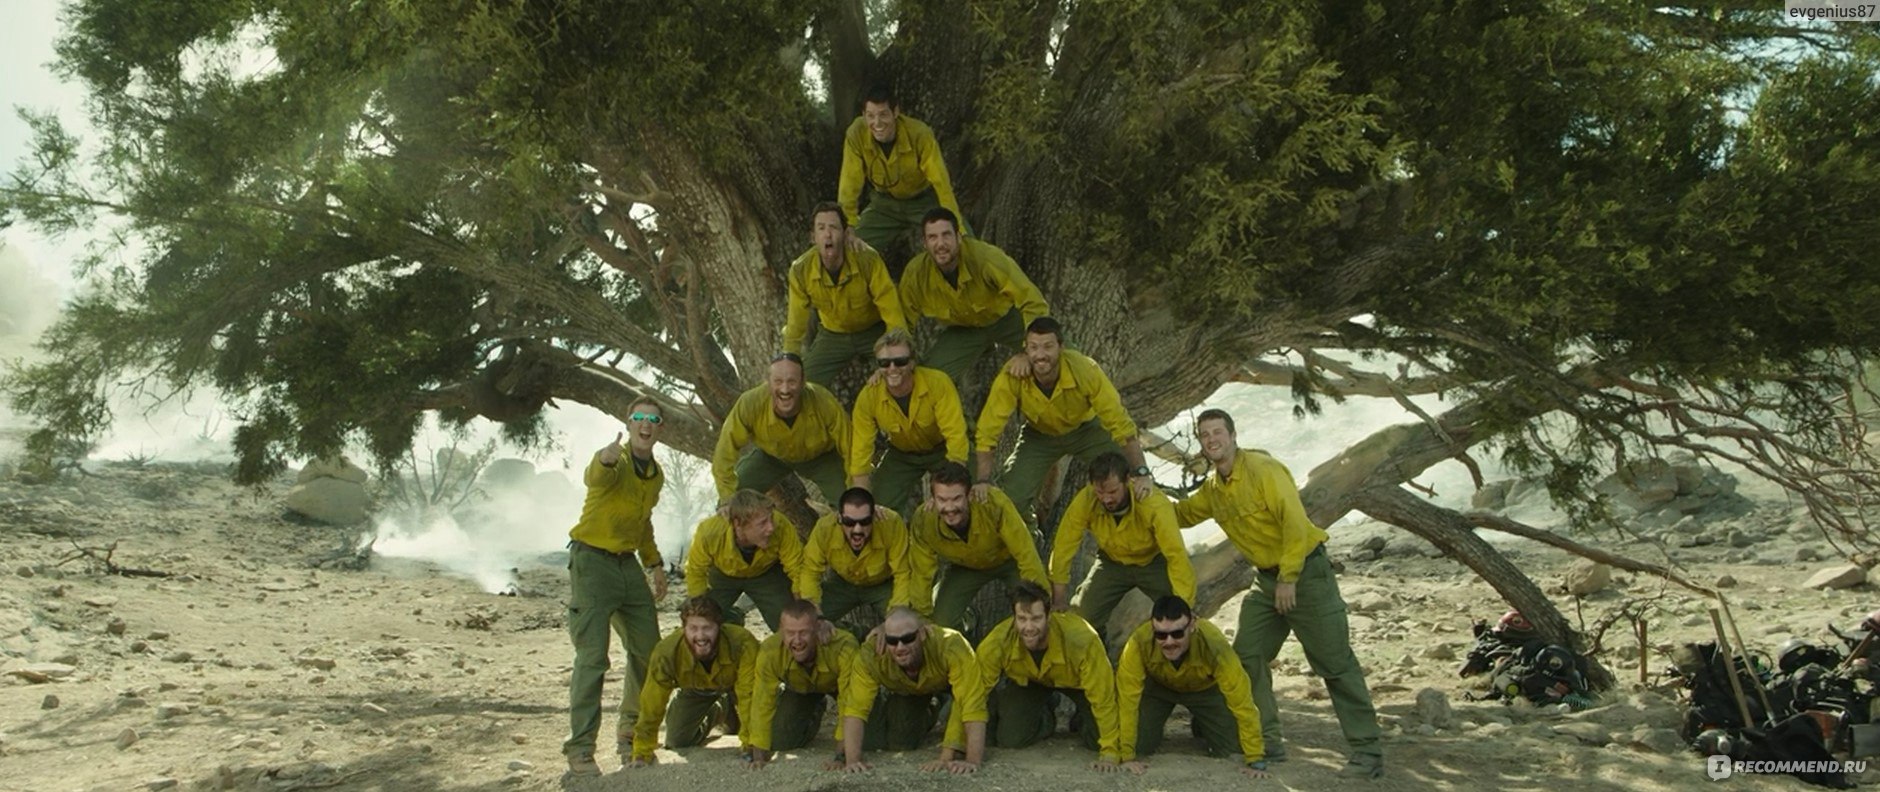 гранитная гора отряд пожарных реальная история